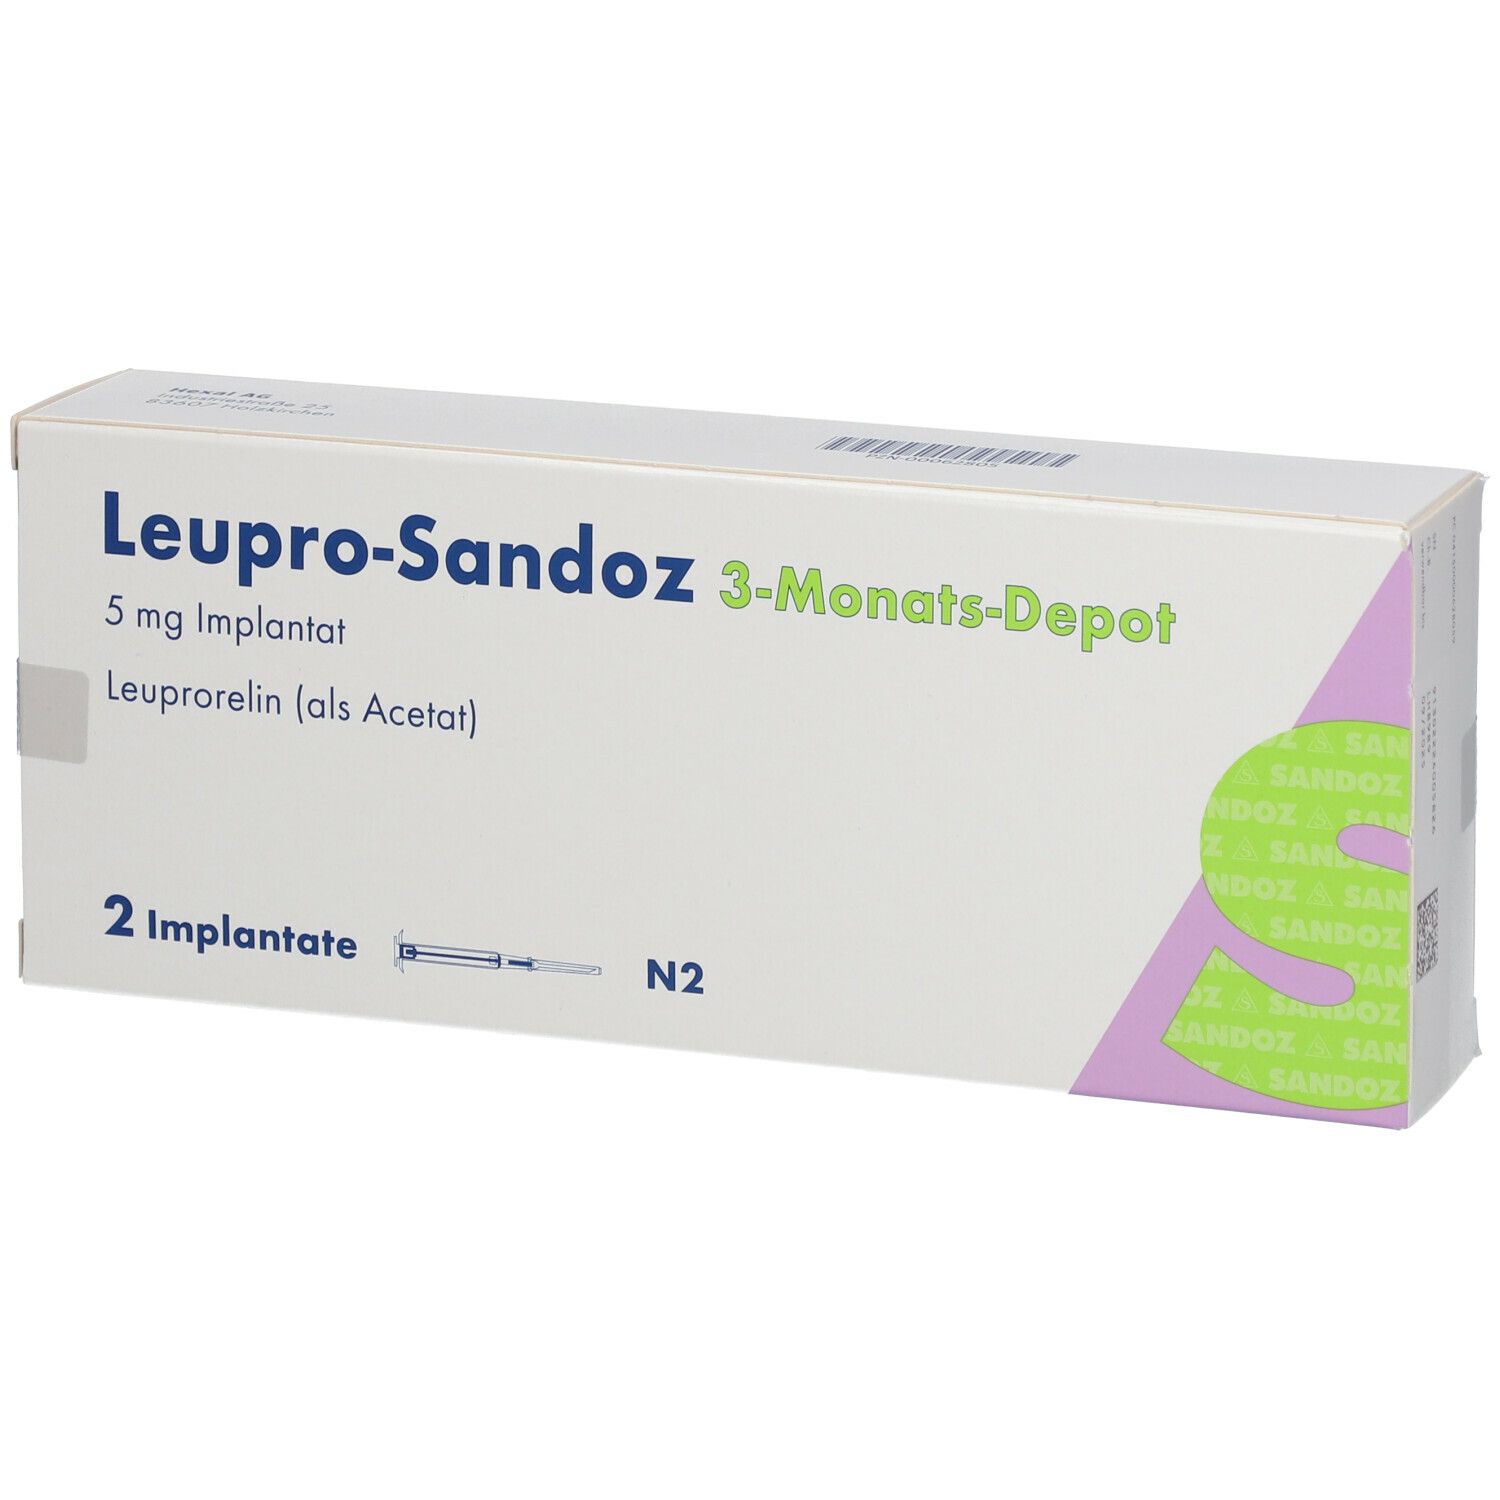 Leupro-Sandoz 3-Monats-Depot